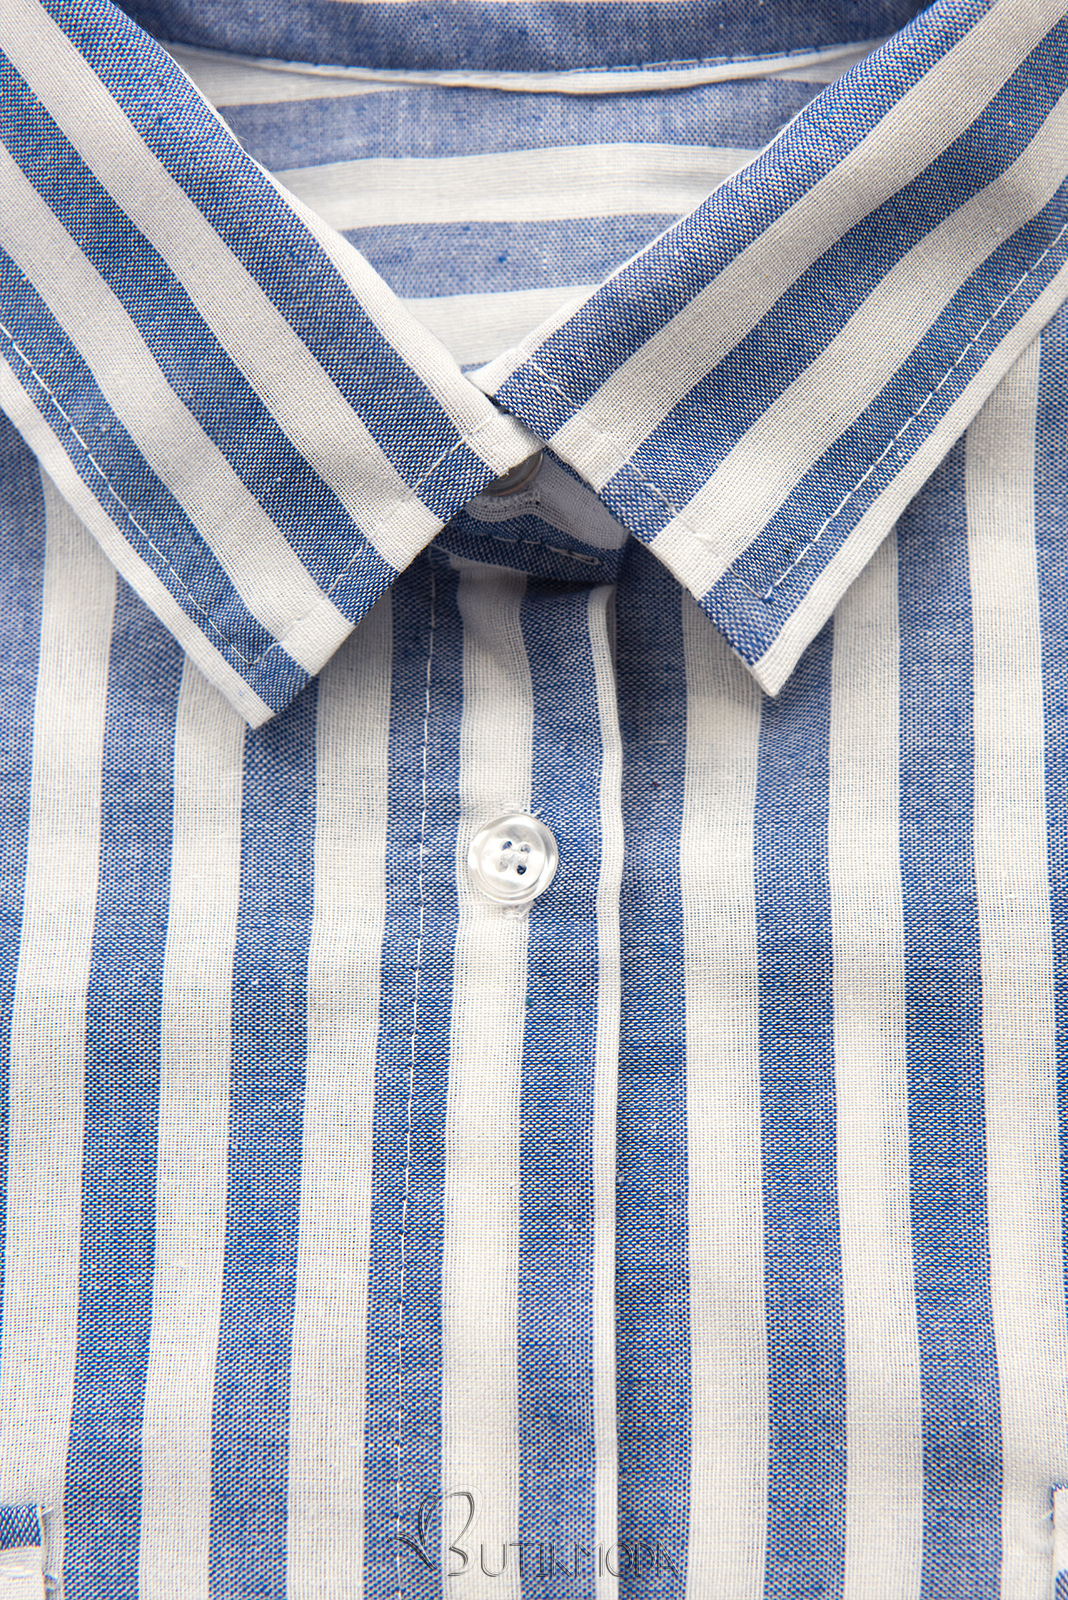 Rochie cămașă din bumbac cu dungi alb/albastru